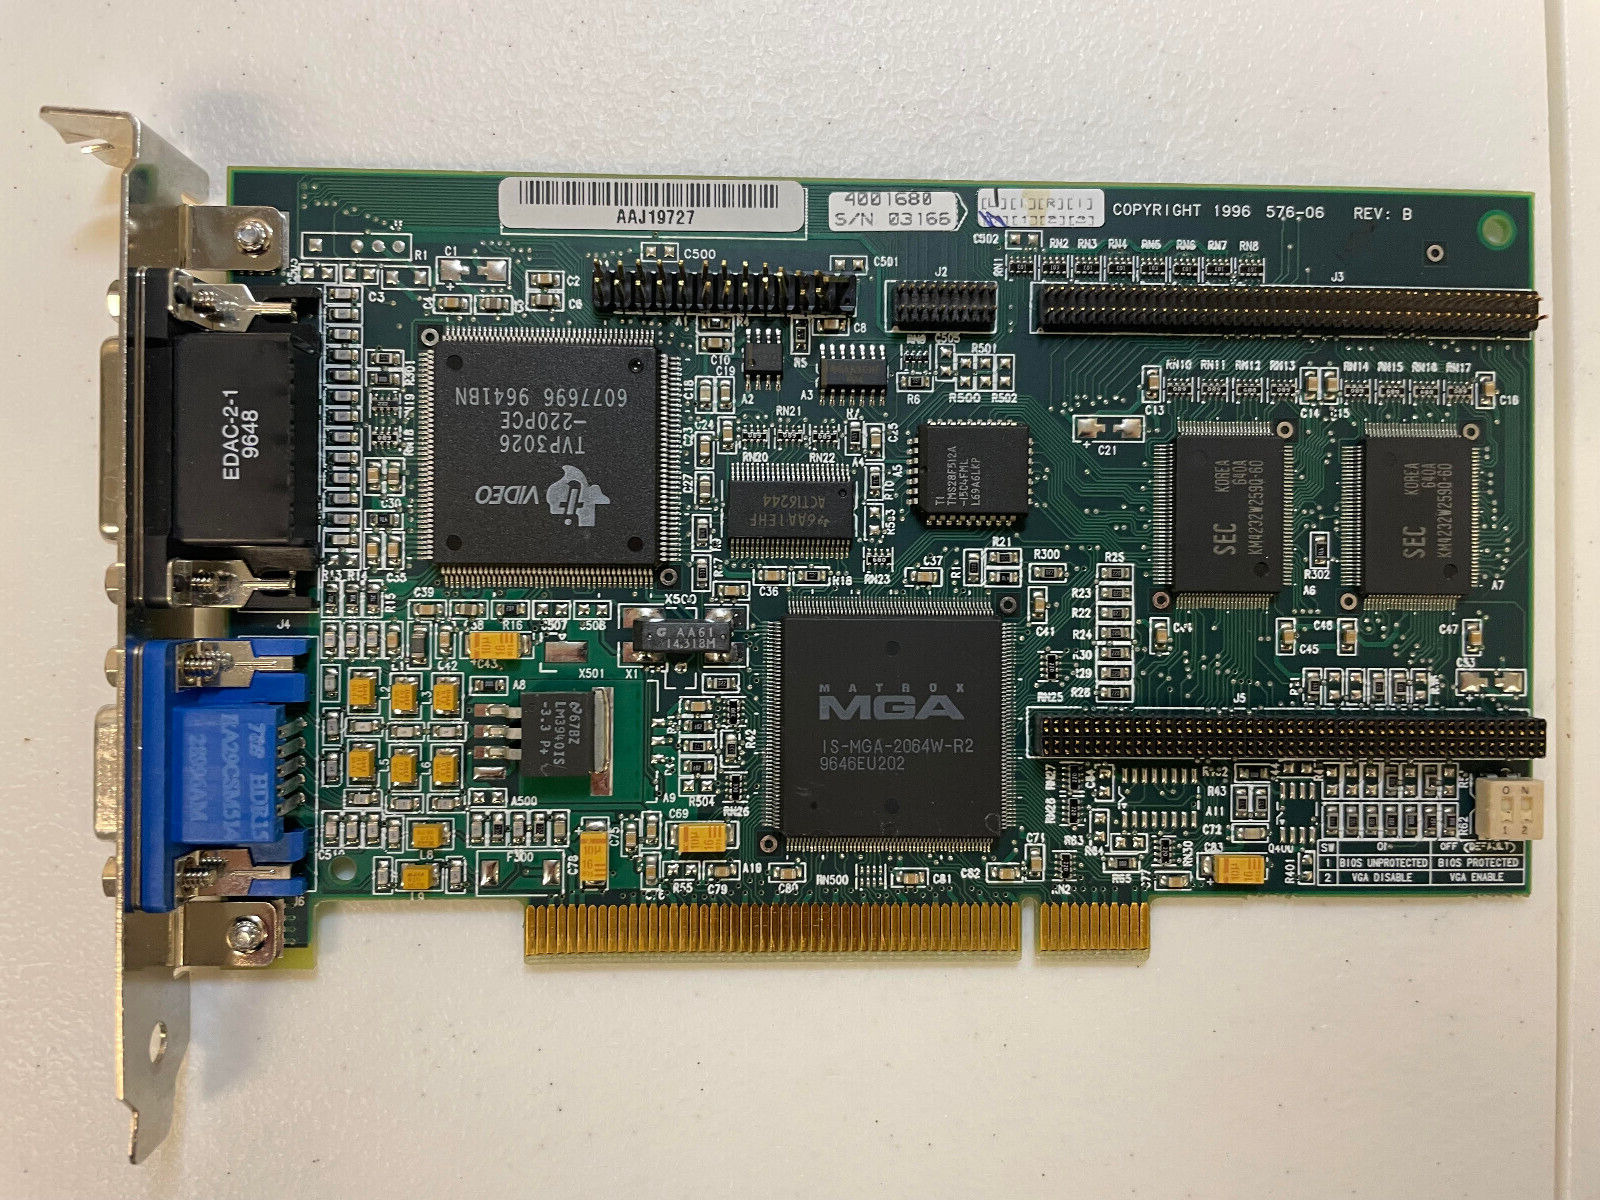 MATROX MGA-MIL/4N PCI VIDEO ADAPTER MGA IS-MGA-2064W-R2 #363